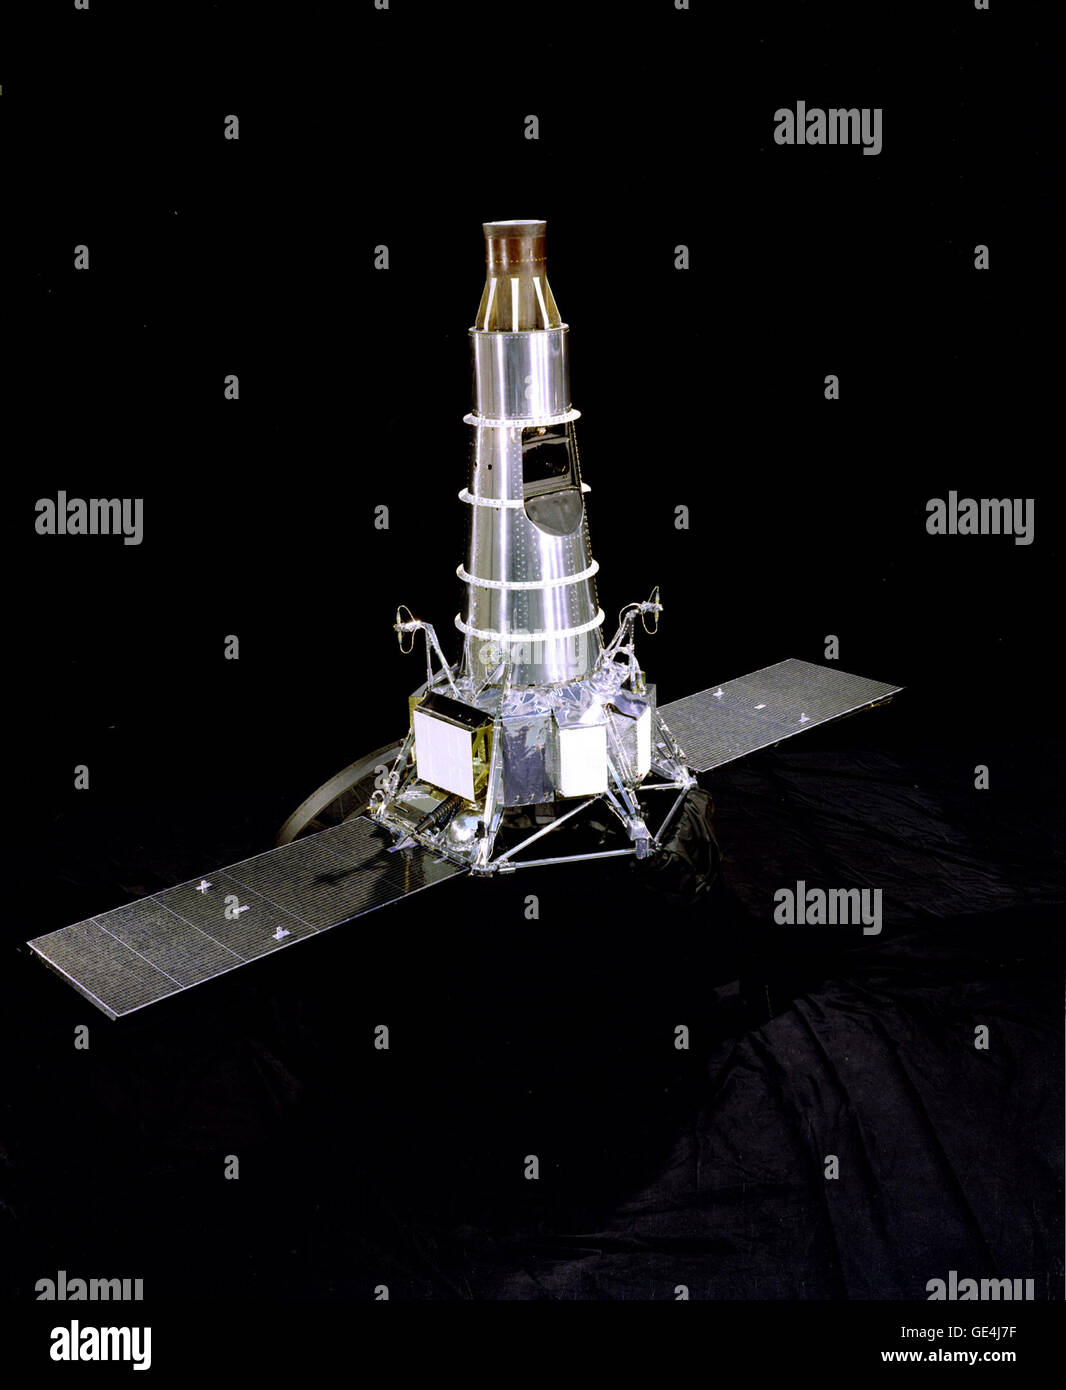 Il Ranger flotta di veicoli spaziali ha lanciato a metà degli anni sessanta ha fornito il primo live le trasmissioni televisive della Luna da vicino. Queste trasmissioni risolto le caratteristiche di superficie piccole quanto 10 cm di diametro e dotato di oltre 17.000 immagini della superficie lunare. Queste fotografie dettagliate ammessi gli scienziati e ingegneri per studiare la Luna in maggiore dettaglio rispetto al passato consentendo così per la progettazione di un veicolo spaziale che sarebbe un giorno terra uomini di massa sulla sua superficie. Immagine # : p2888a Data: 30 gennaio 1964 Foto Stock